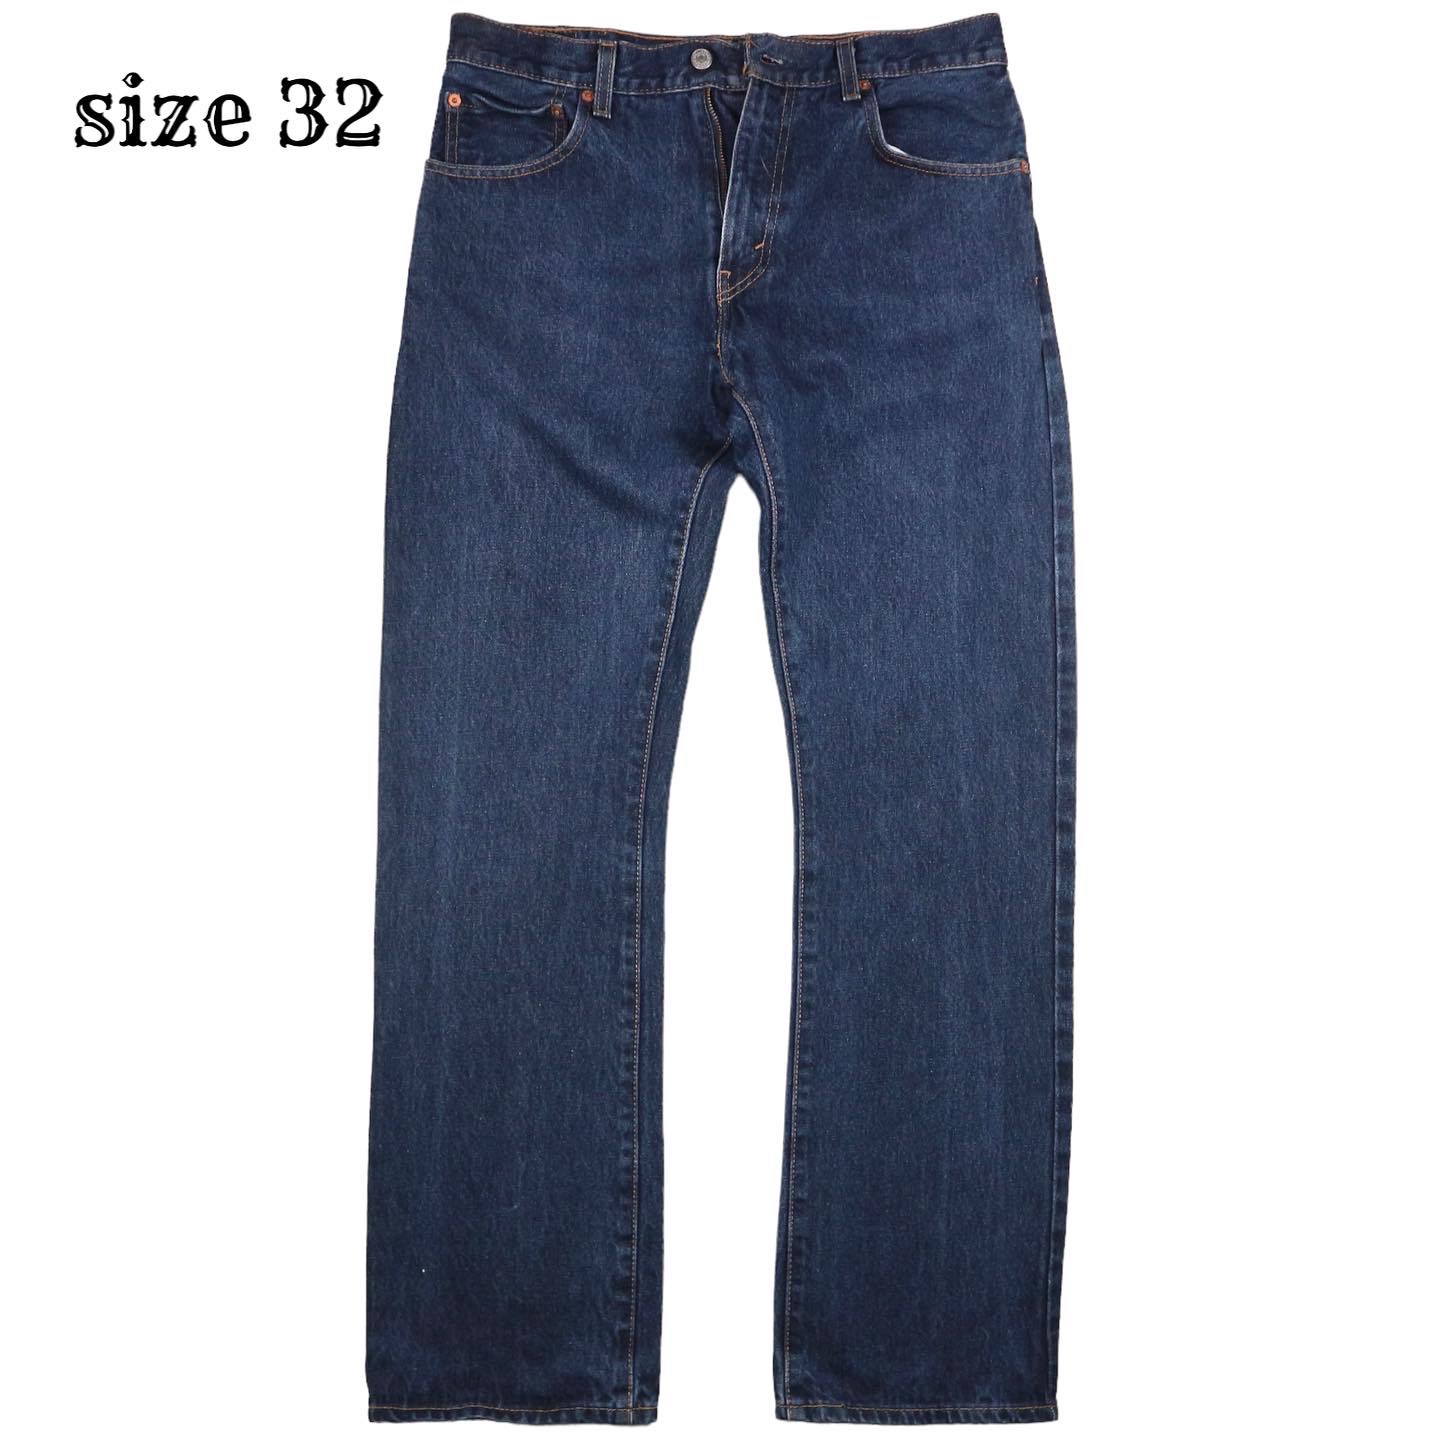 Levi’s 517 Denim Jeans Size 32